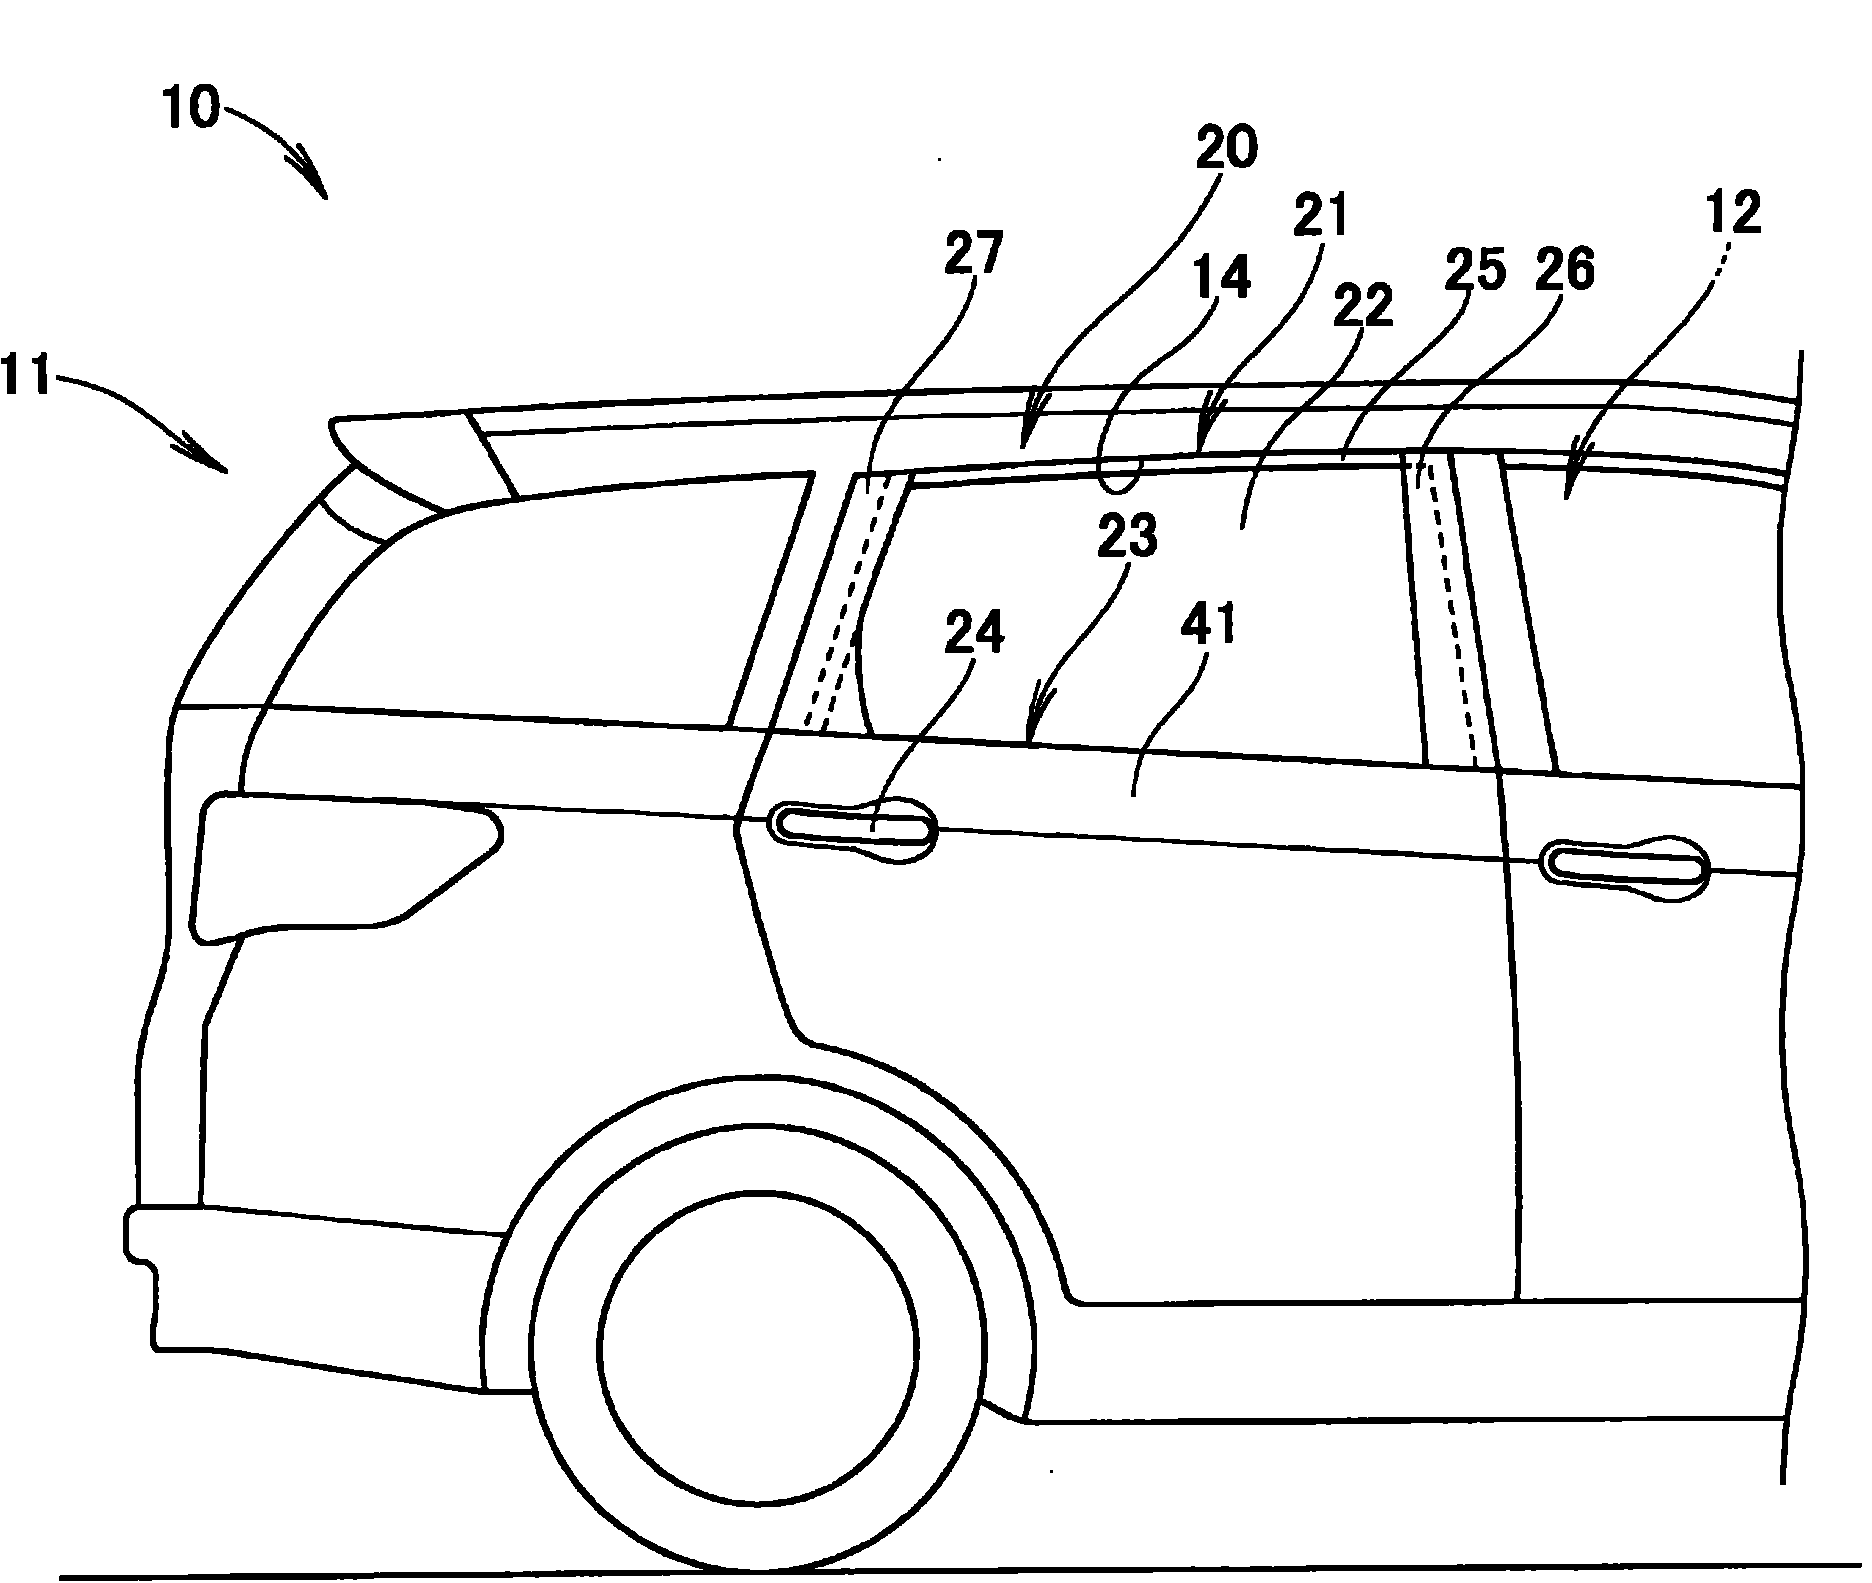 Door device for vehicle